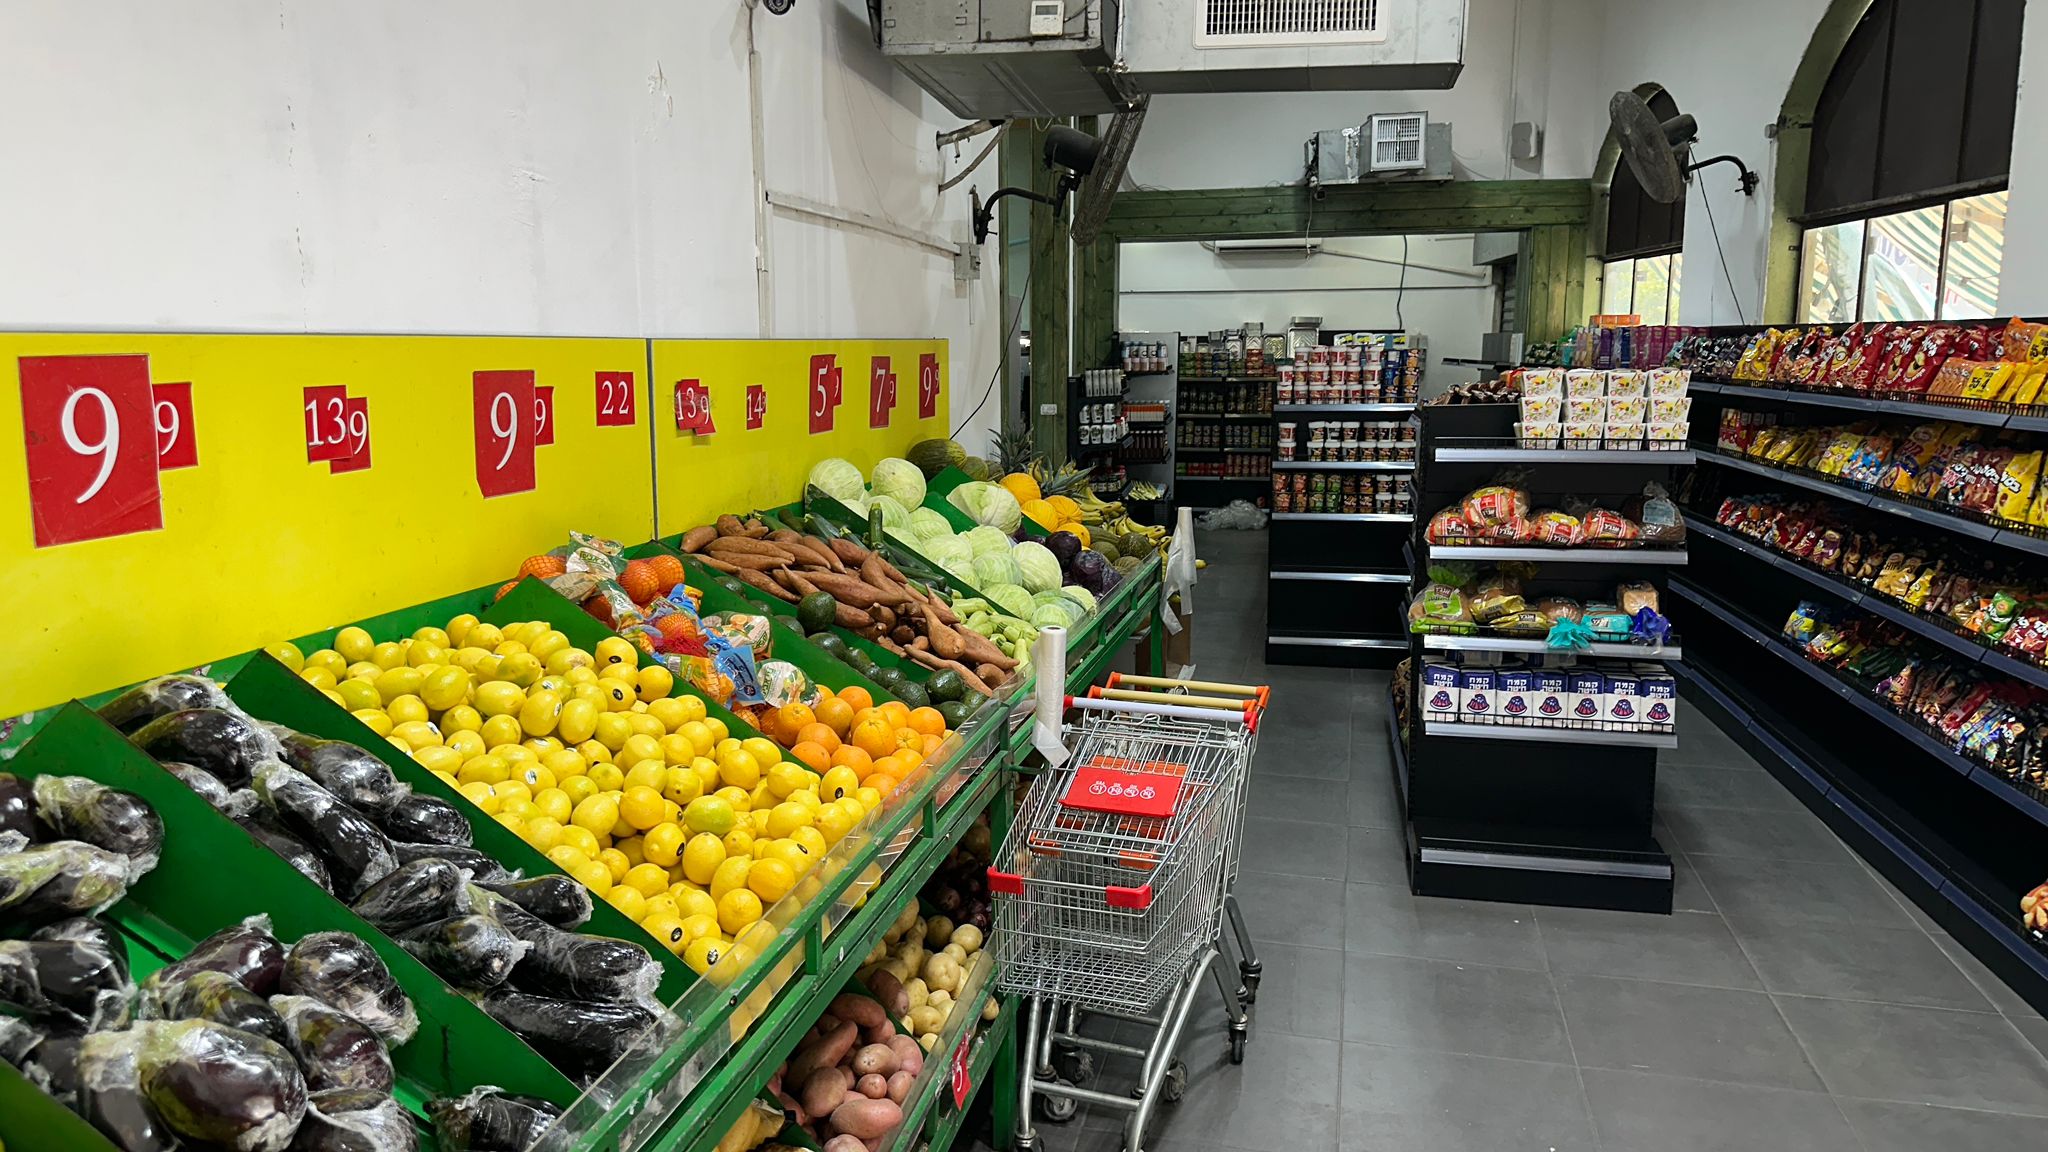 جديد في يافا .. سوبرماركت سوق يافا لكل ما تحتاجه العائلة 